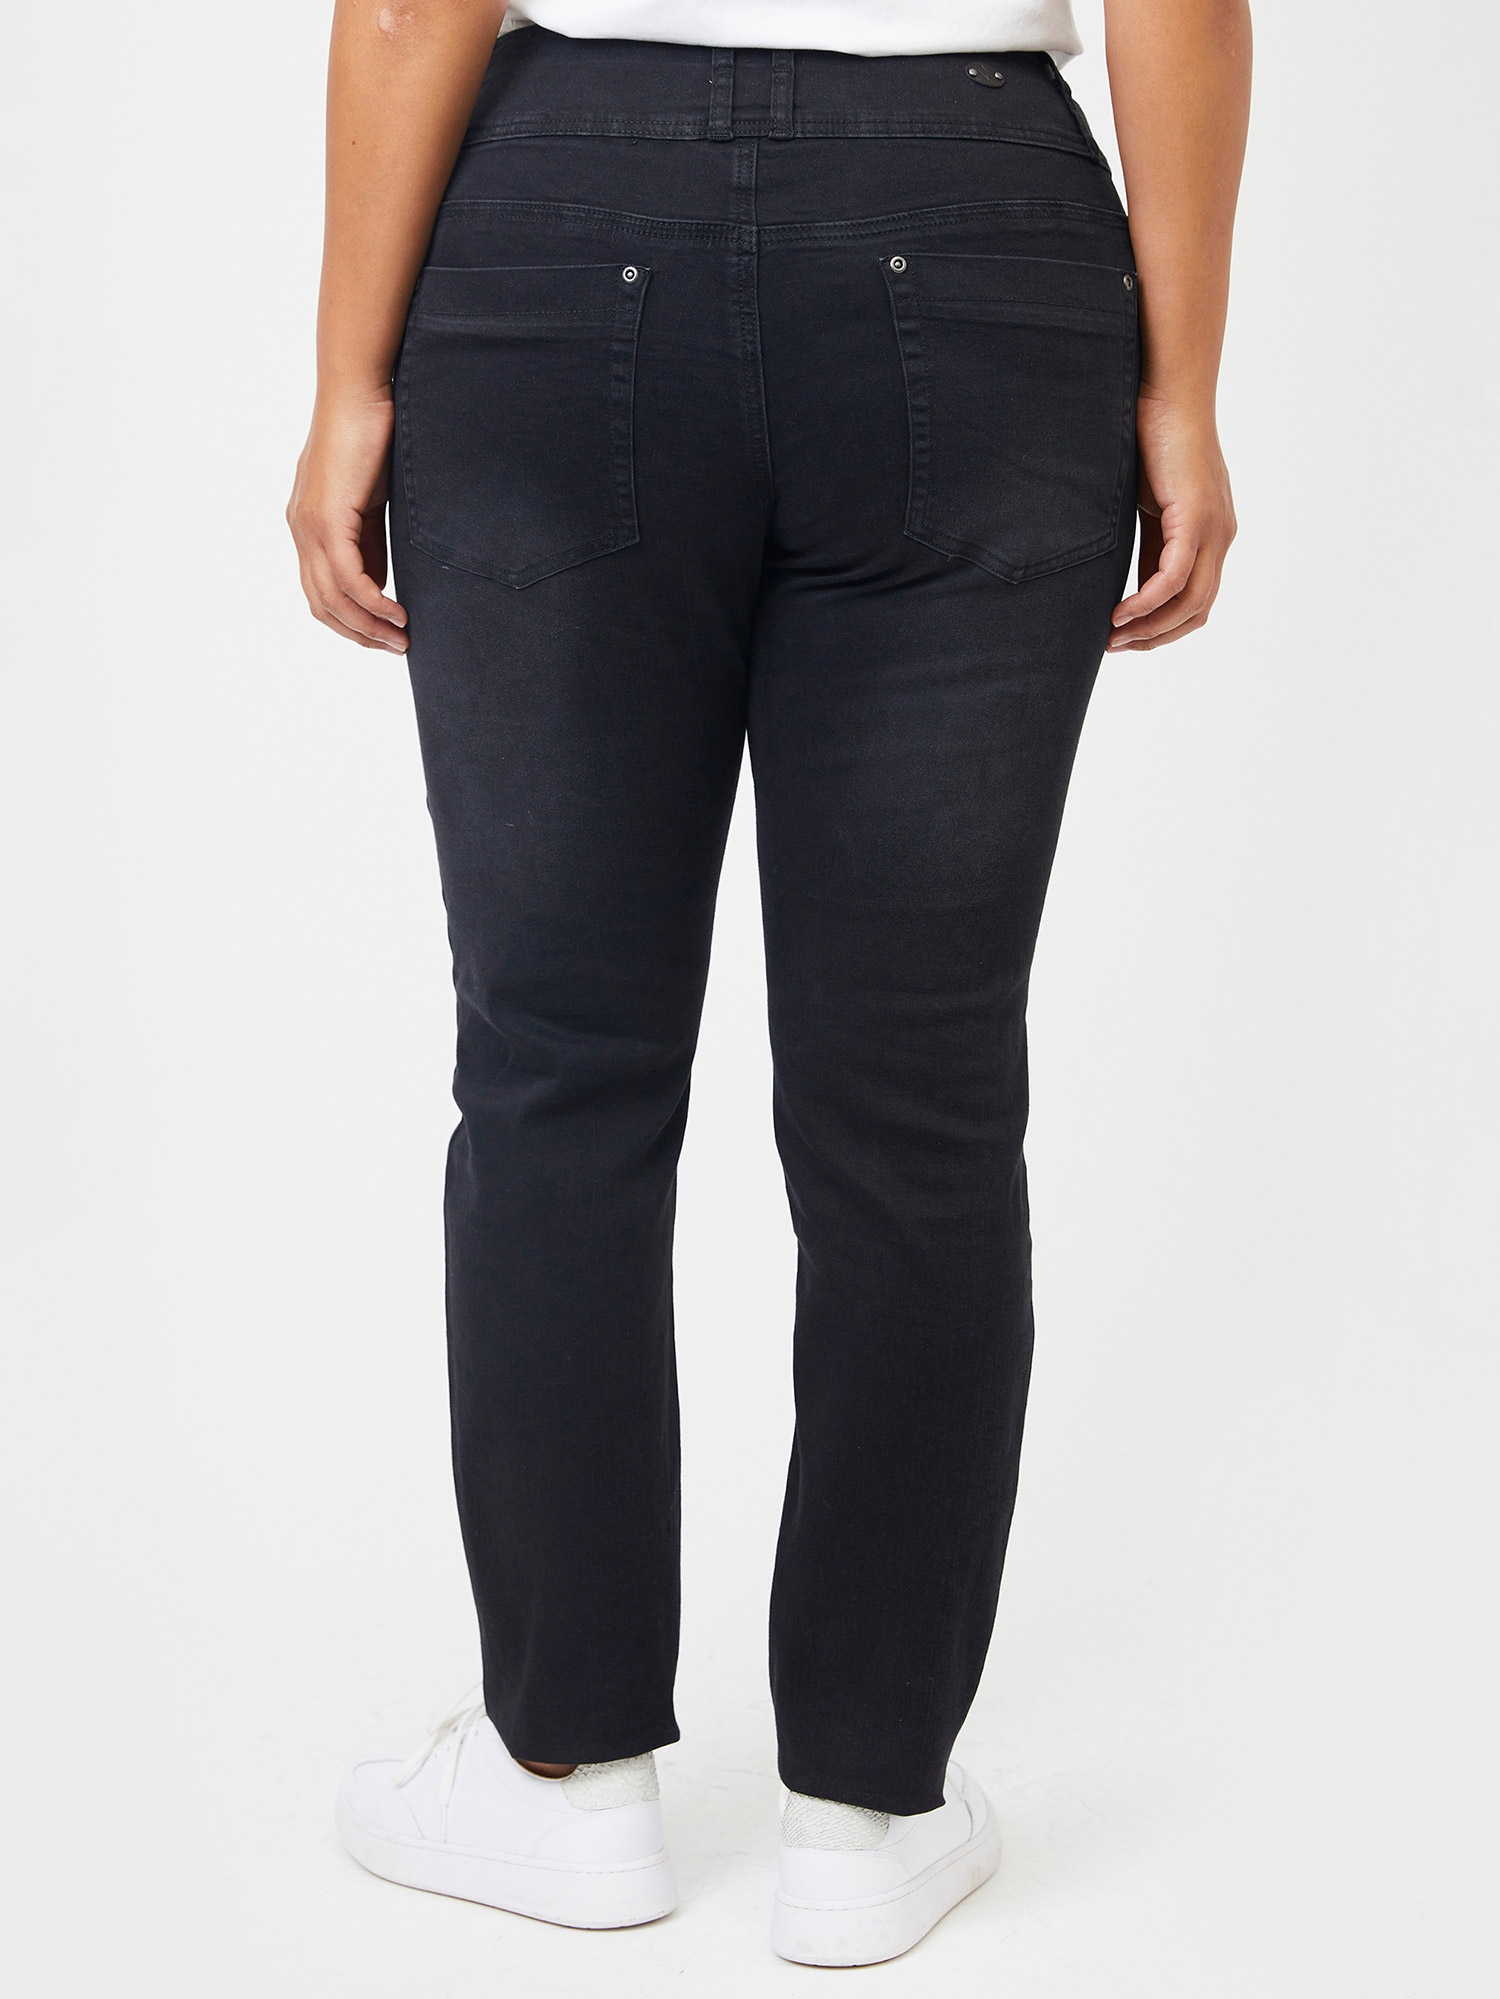 ROME - Sorte skrækbar jeans med bred linning fra Adia